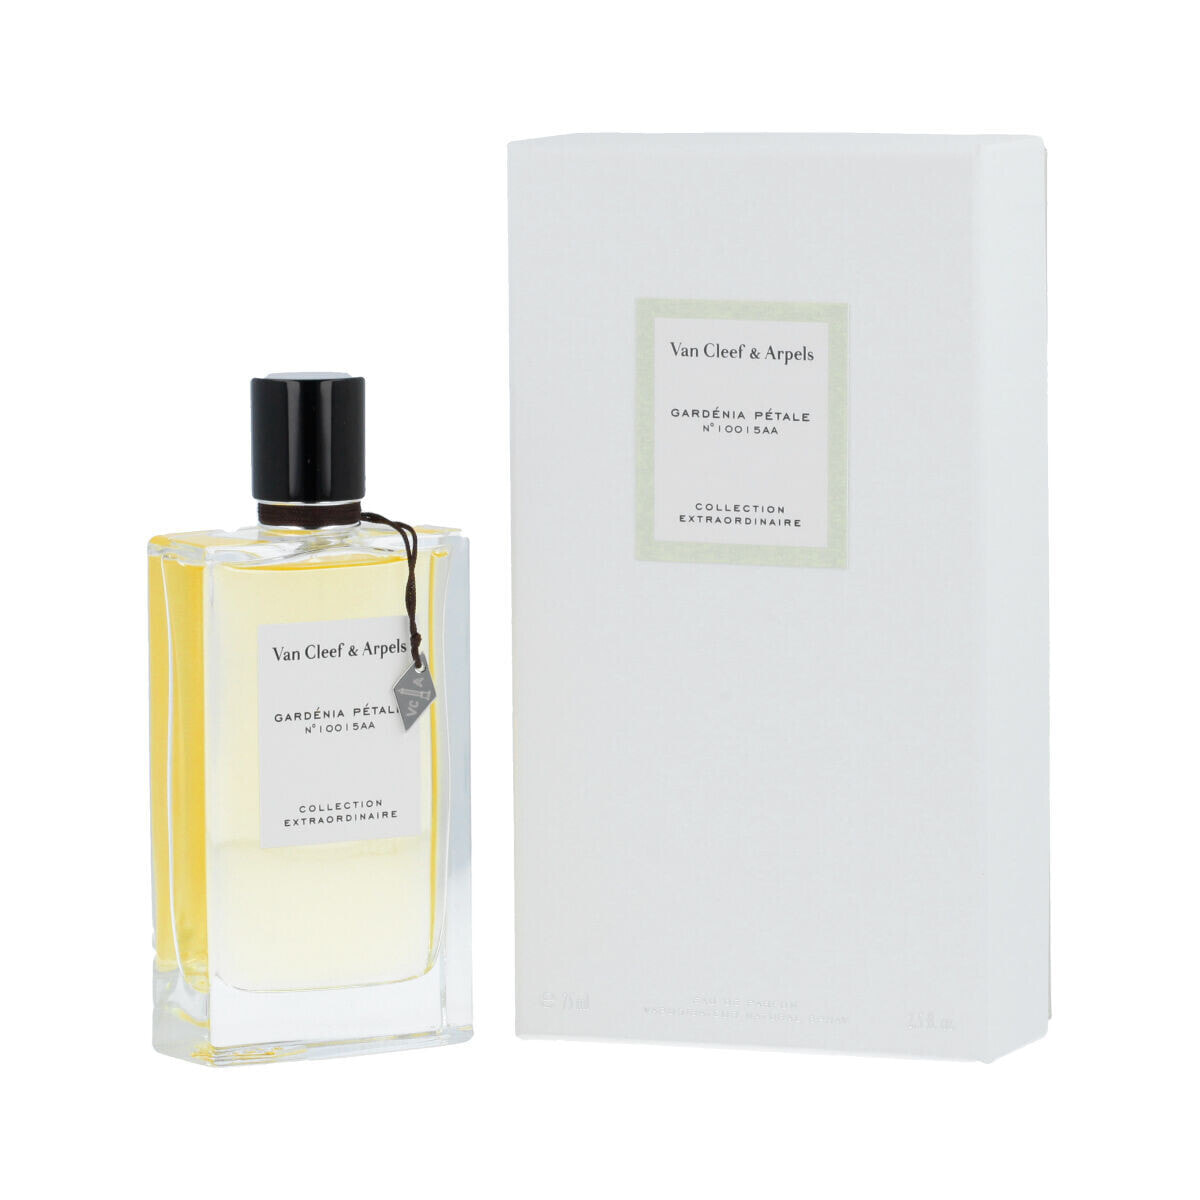 Women's Perfume Van Cleef & Arpels EDP Collection Extraordinaire Gardénia Pétale 75 ml